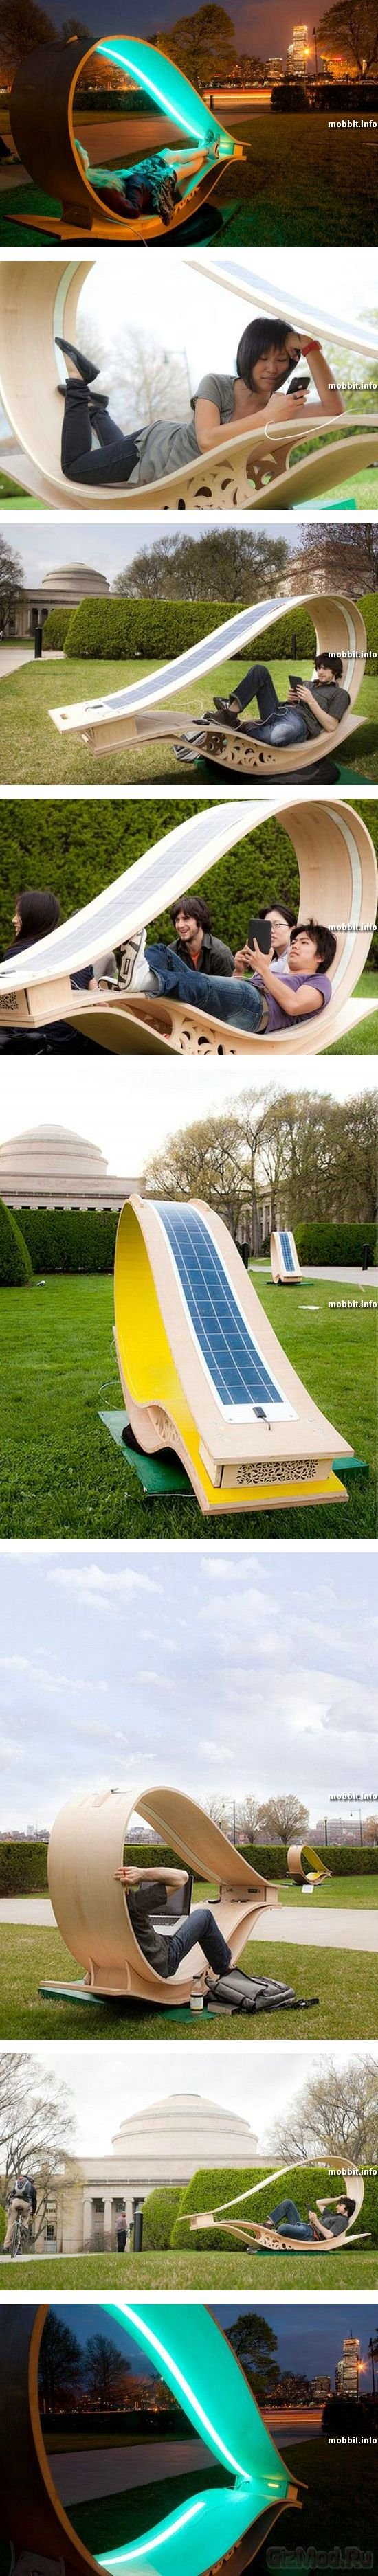 Кресла на солнечных батареях